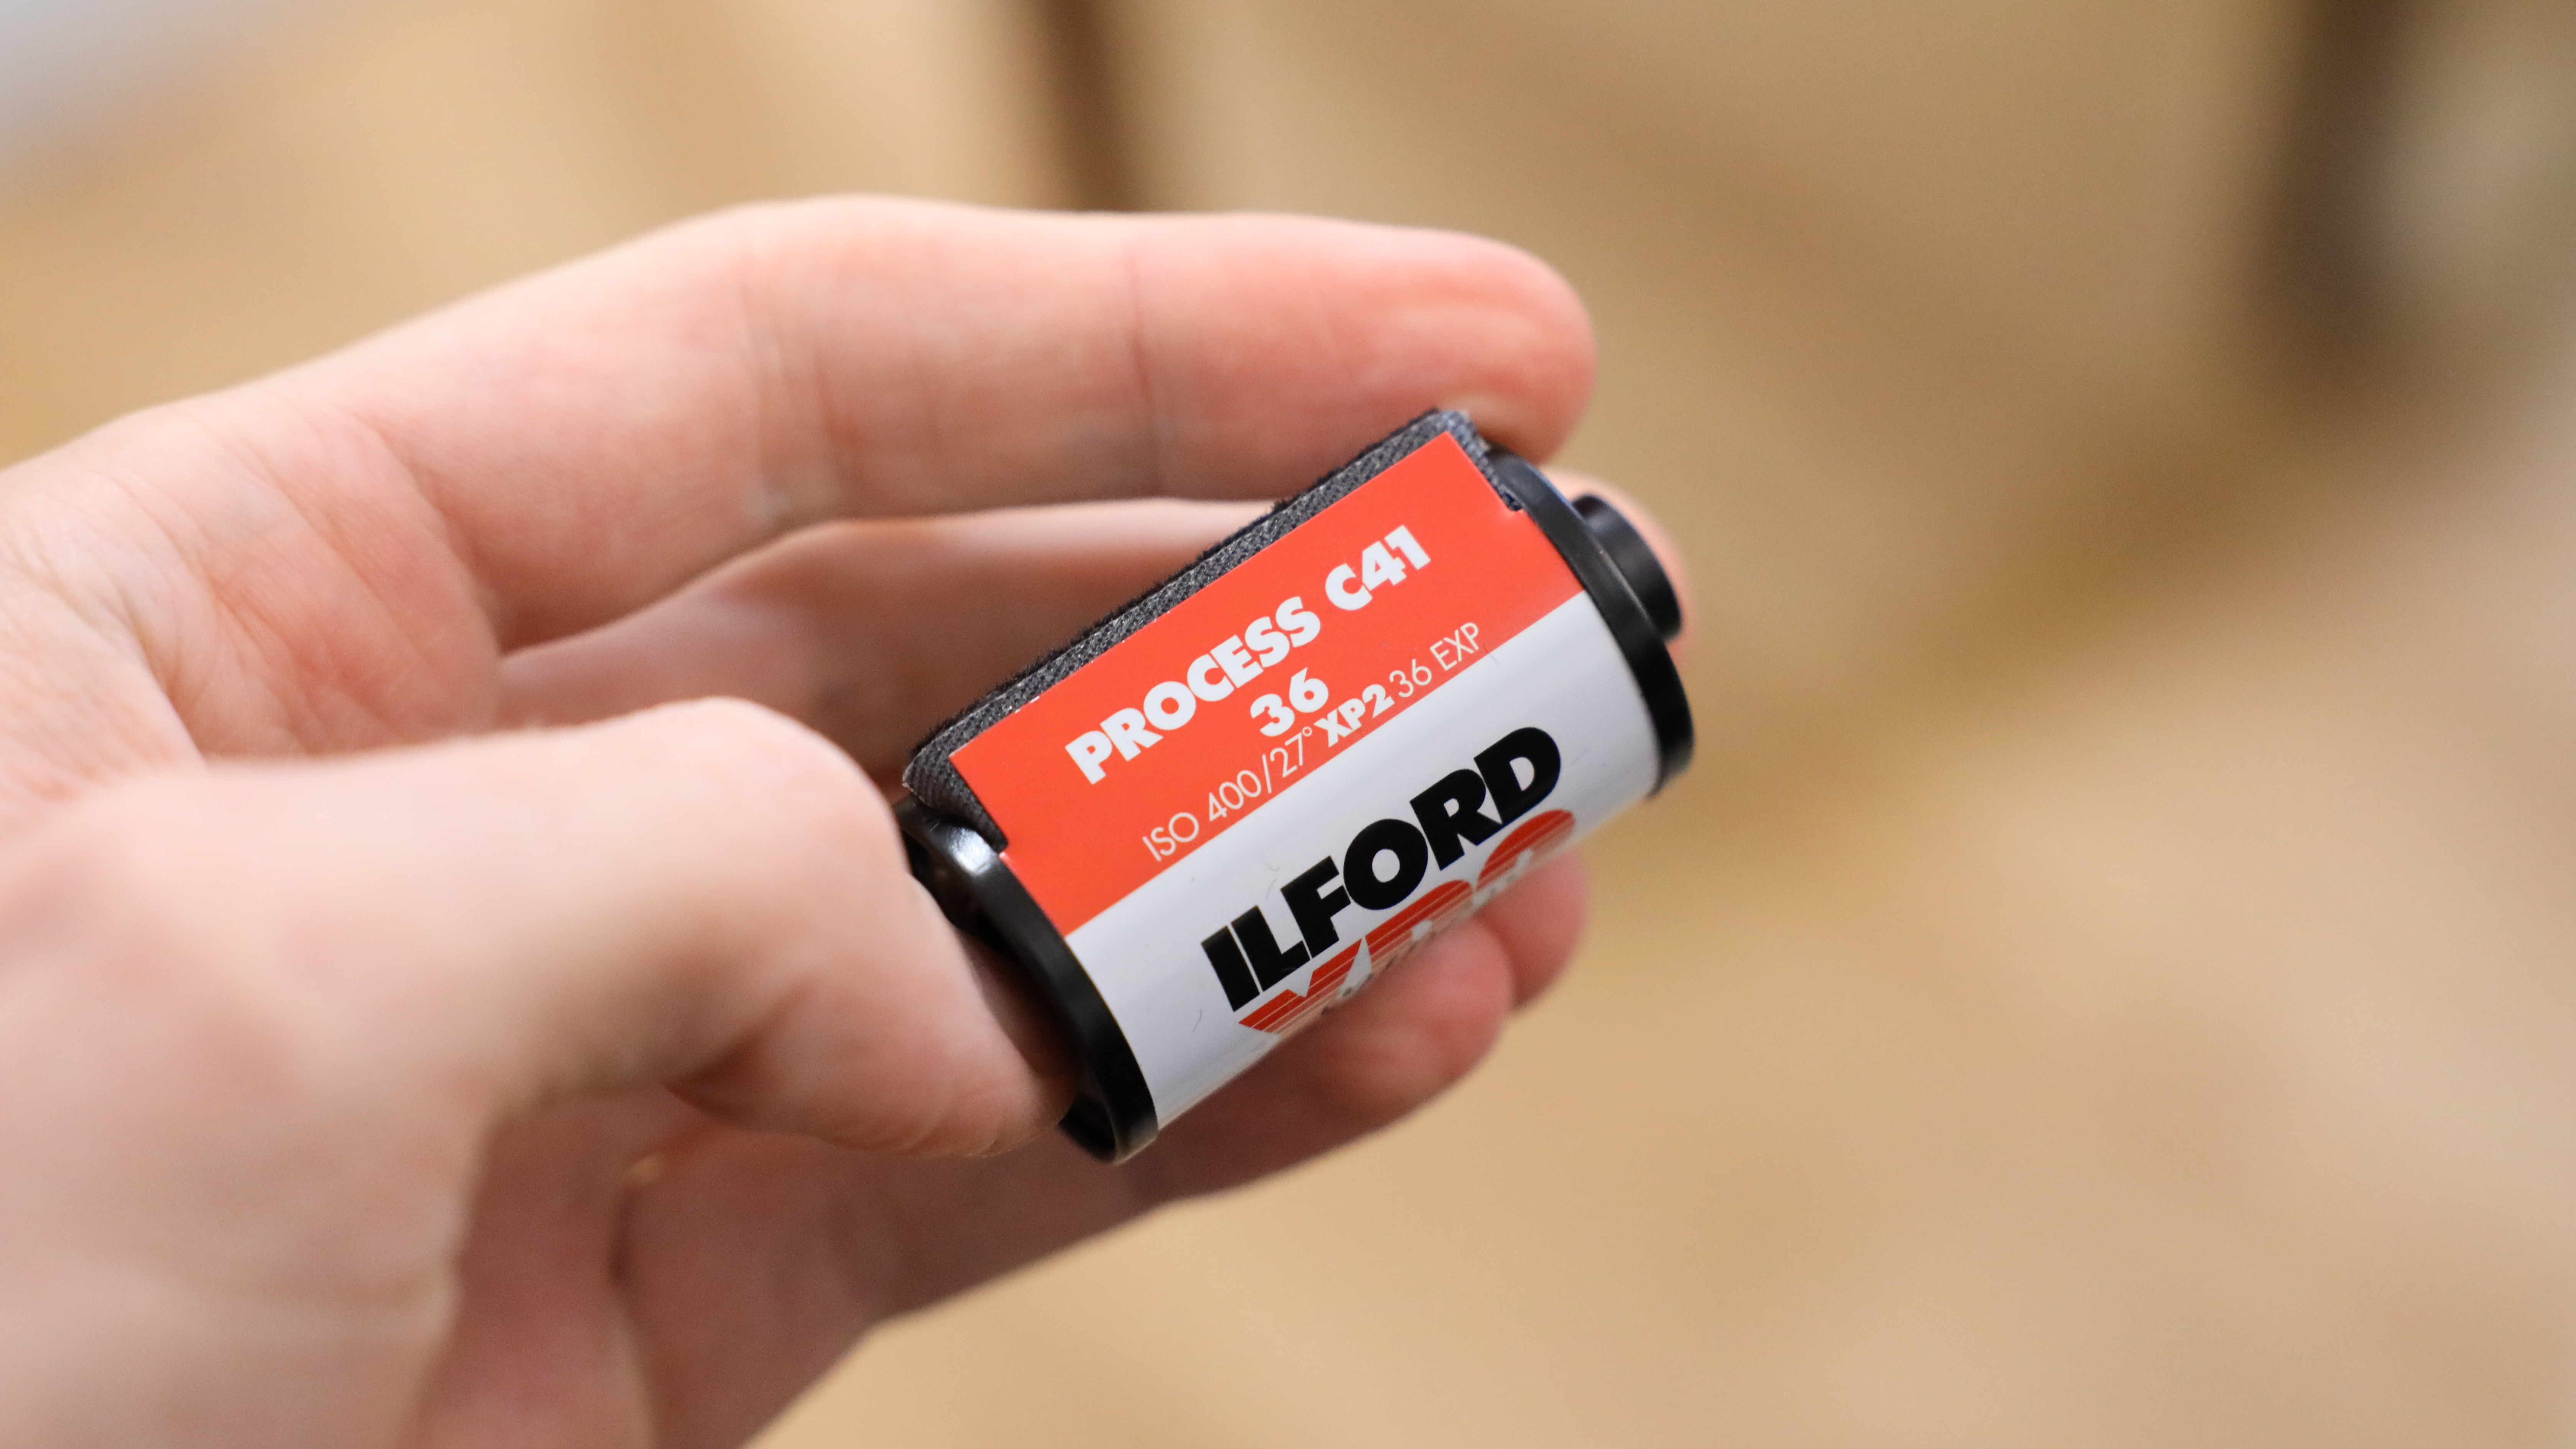 علبة فيلم Ilford XP2 Super 35mm ممسوكة في اليد